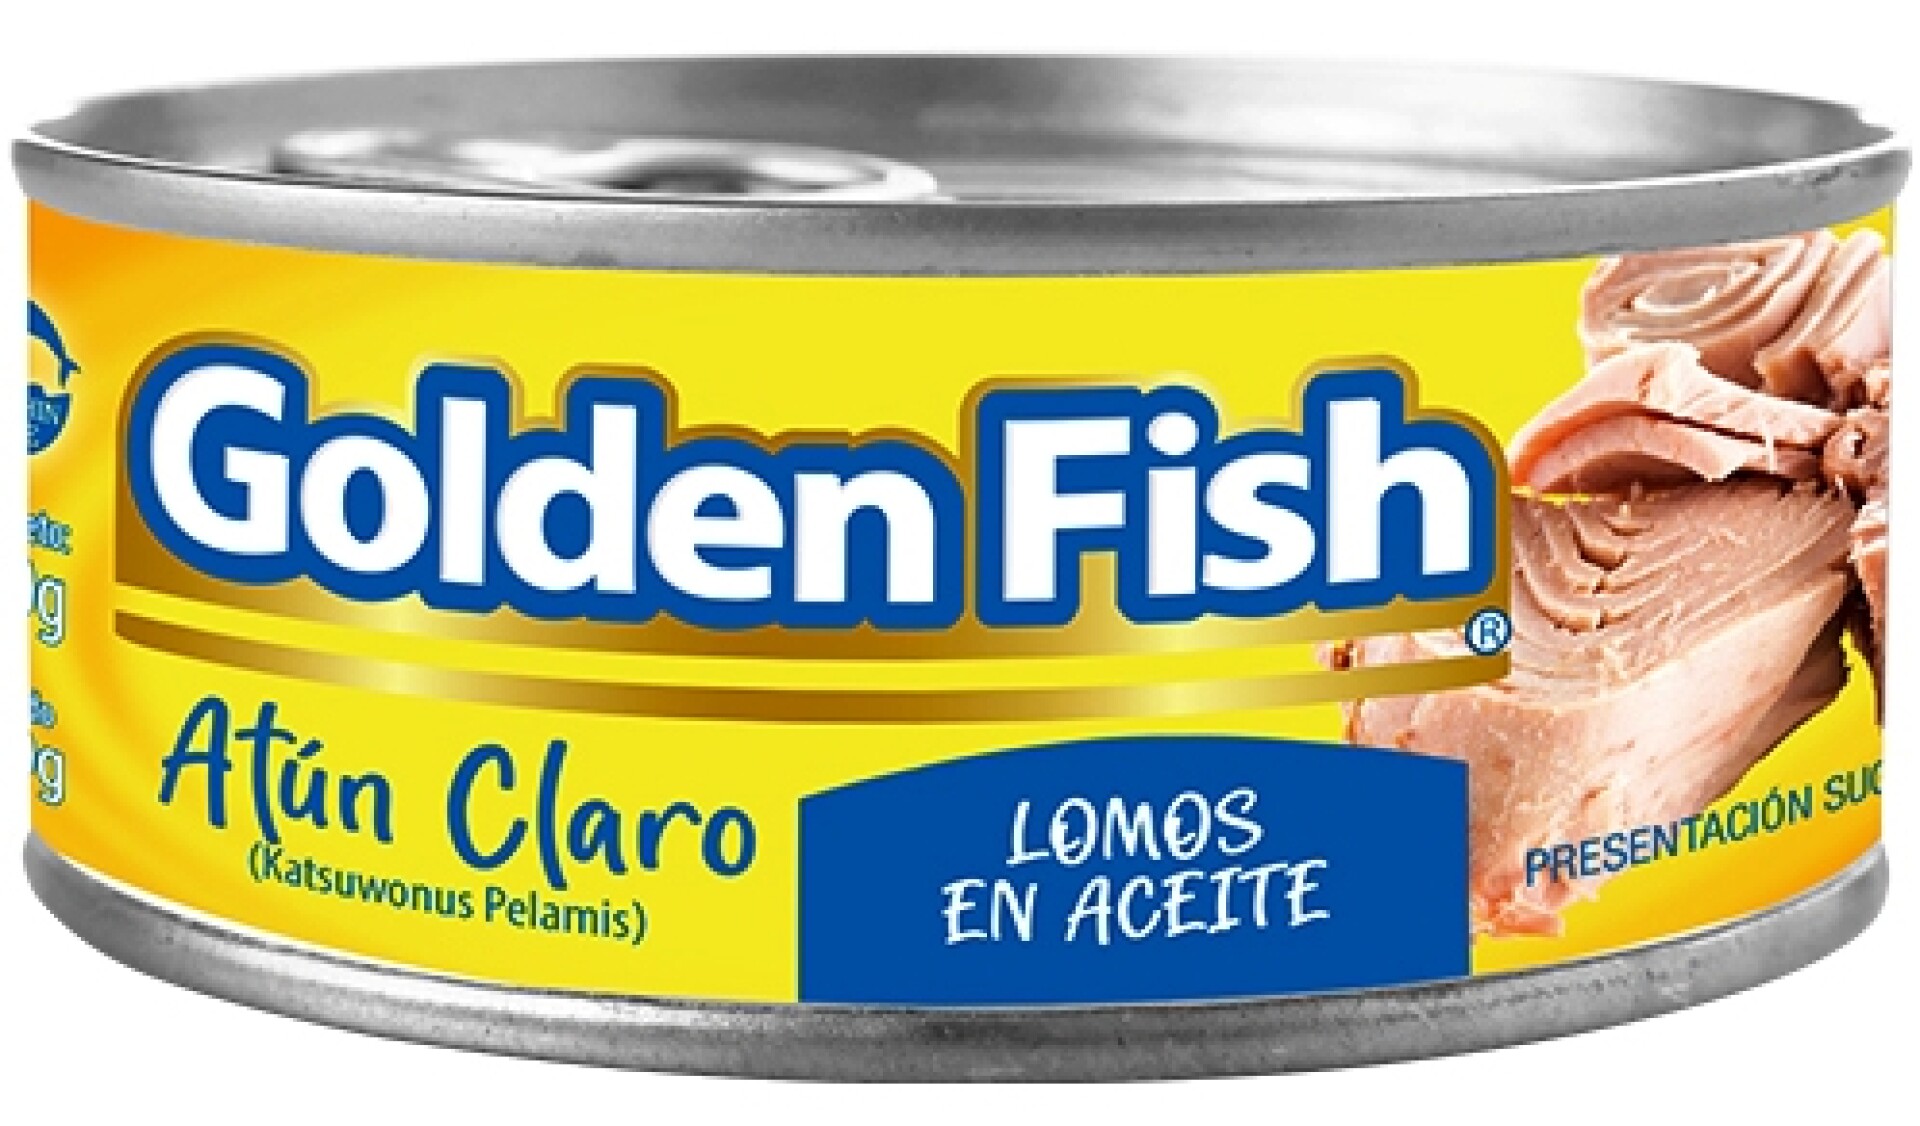 ATUN CLARO LOMITO ENTERO ACEITE 170G GOLDEN FISH 